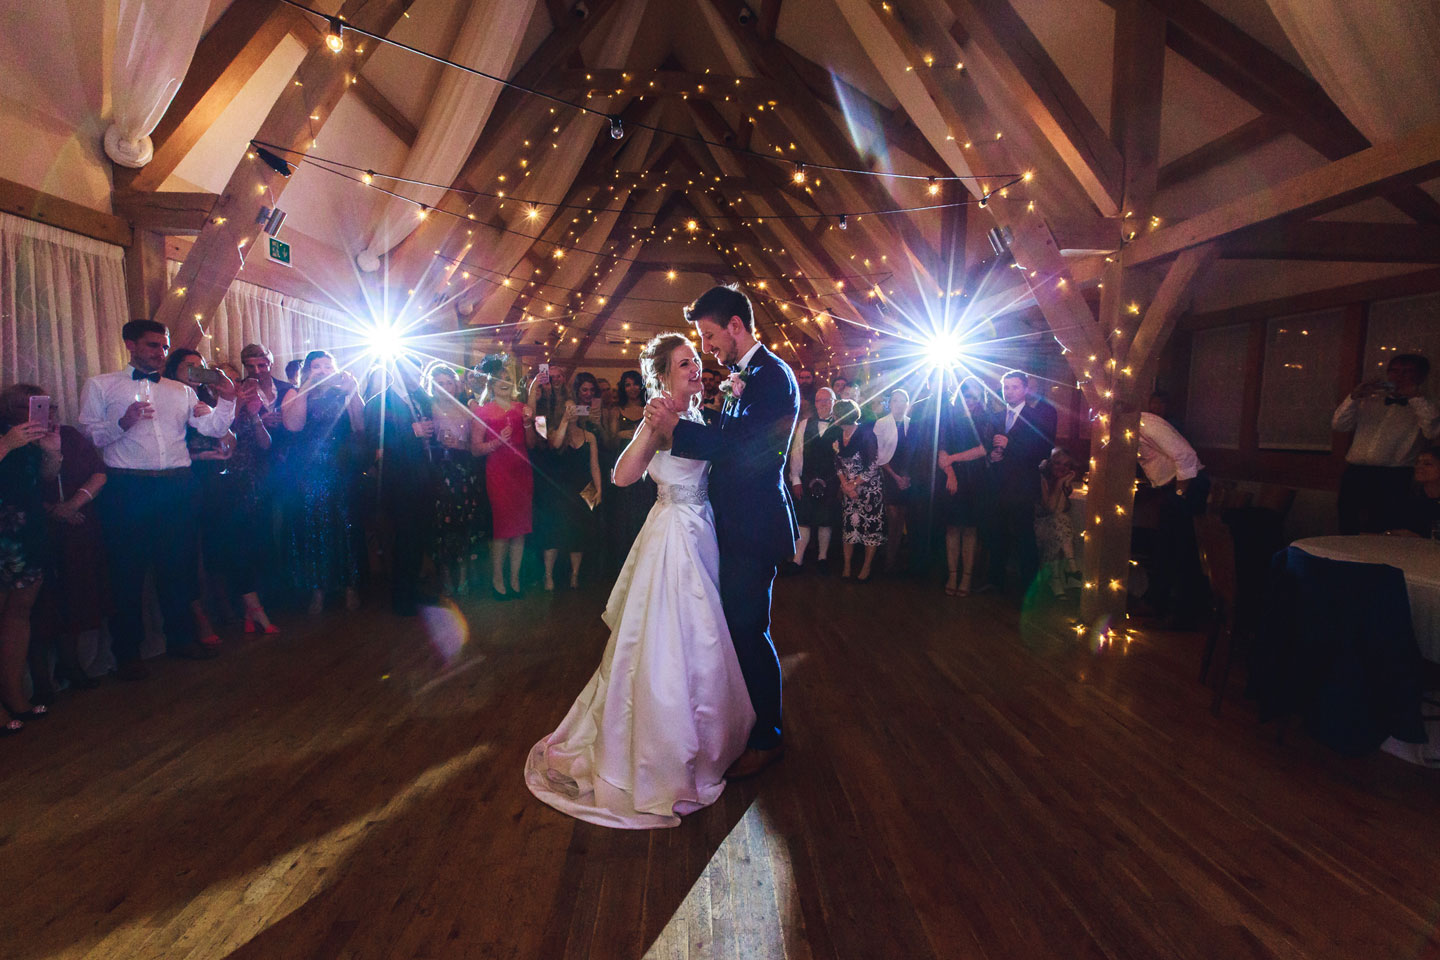 The happy newlyweds enjoy their first dance doughnut-wall-wedding-ideas